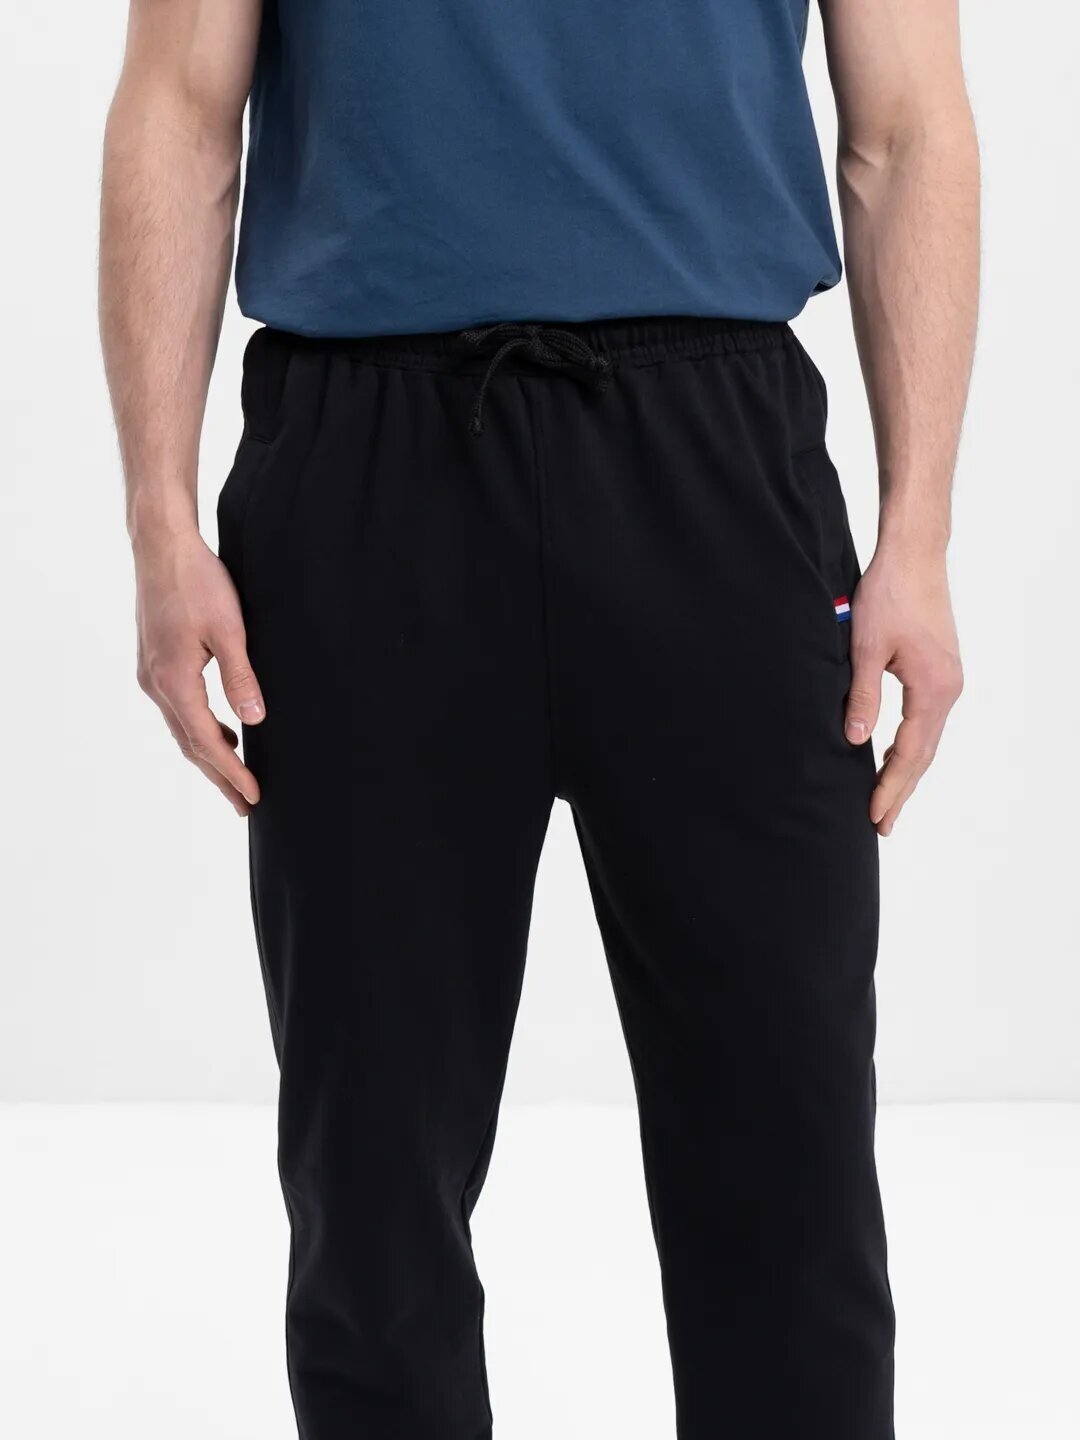 Брюки мужские домашние спортивные, штаны для дома, трико, брюки мужские трикотажные (черный, 52) - фотография № 3